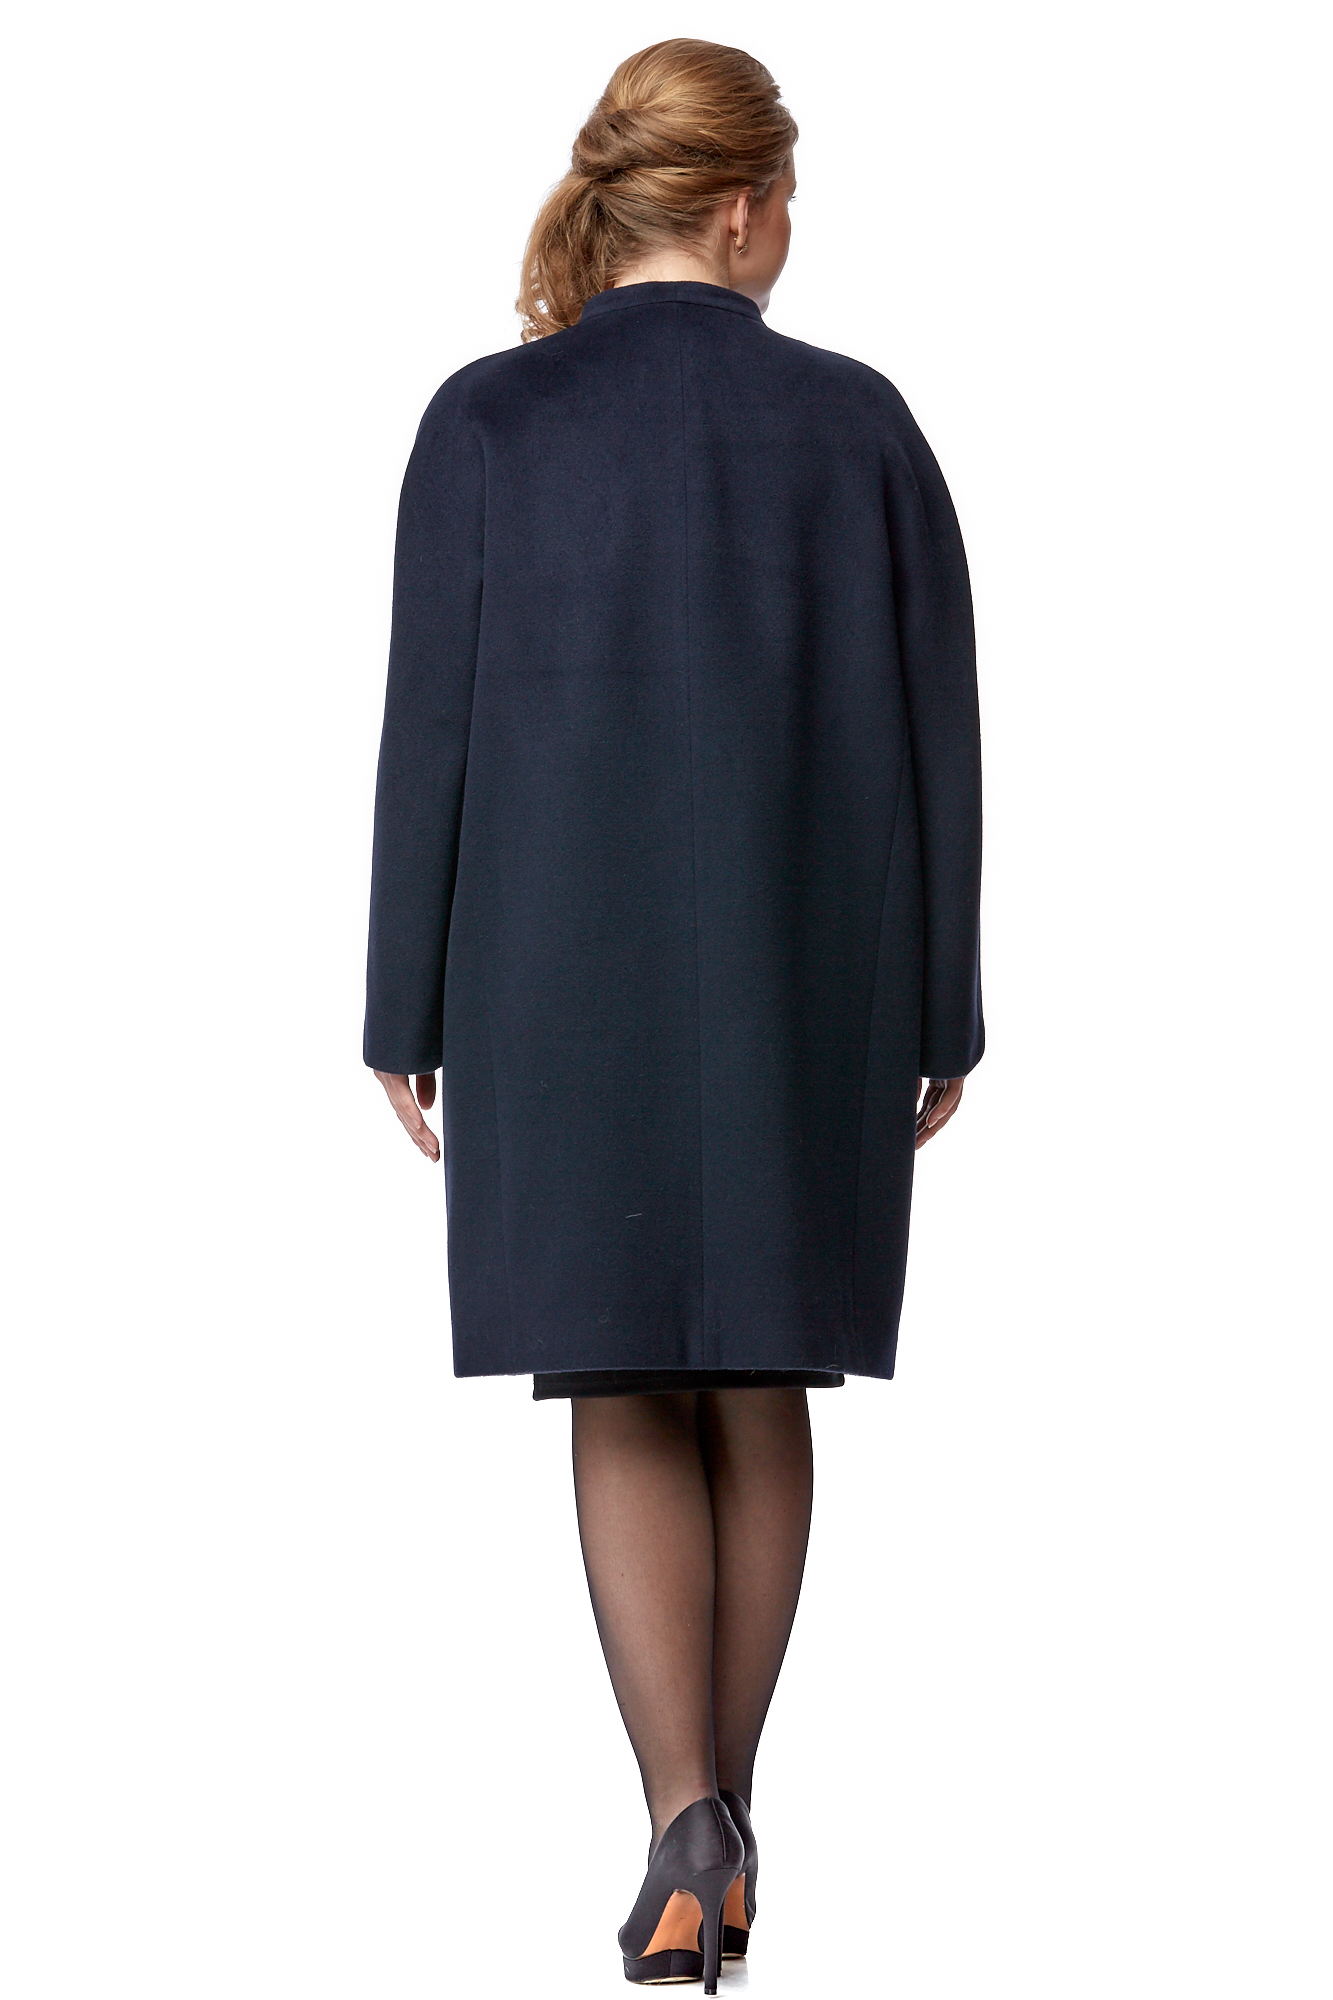 Женское пальто из текстиля без воротника 8001784-3